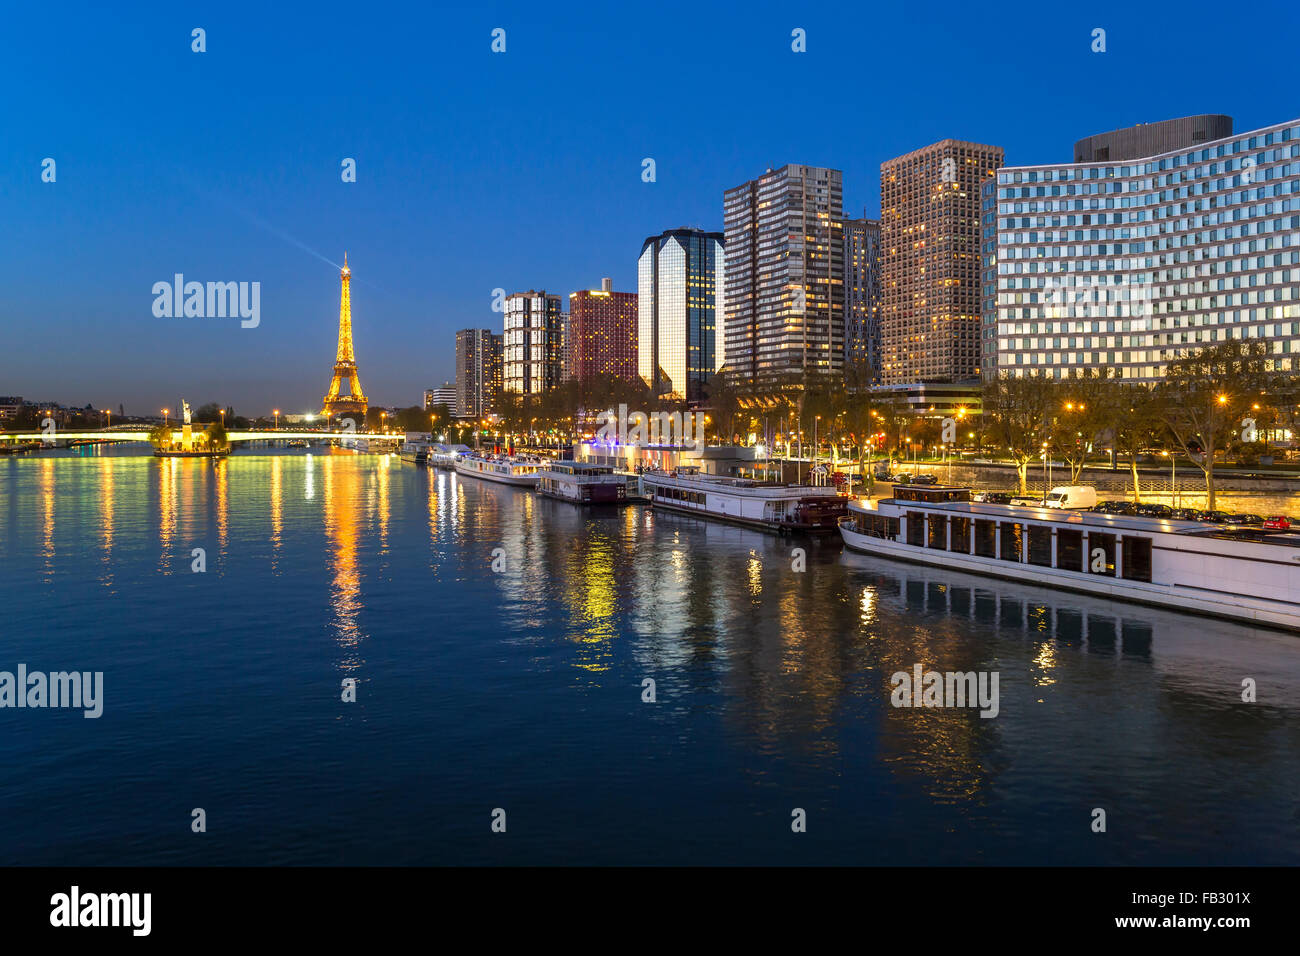 Vista notturna del Fiume Senna con barche e edifici ad alta sulla riva sinistra e la Torre Eiffel, Parigi, Francia, Europa Foto Stock